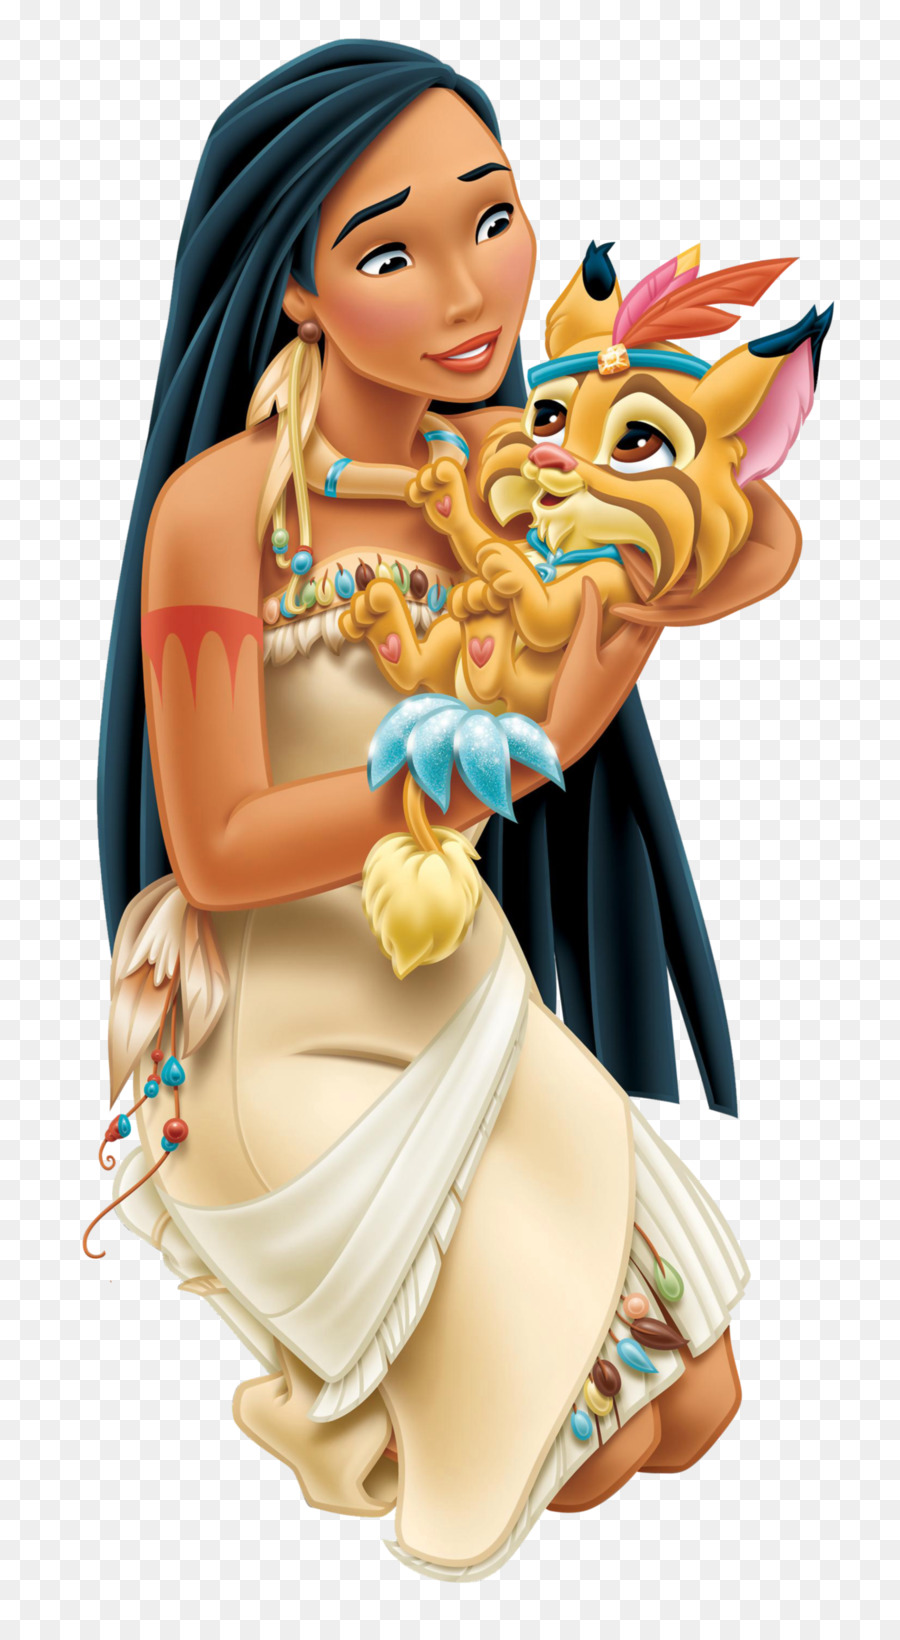 Pocahontas Rapunzel Belle Ariel Disney Princess - Pocahontas Cliparts png download - 1658*3000 - Free Transparent Pocahontas png Download.